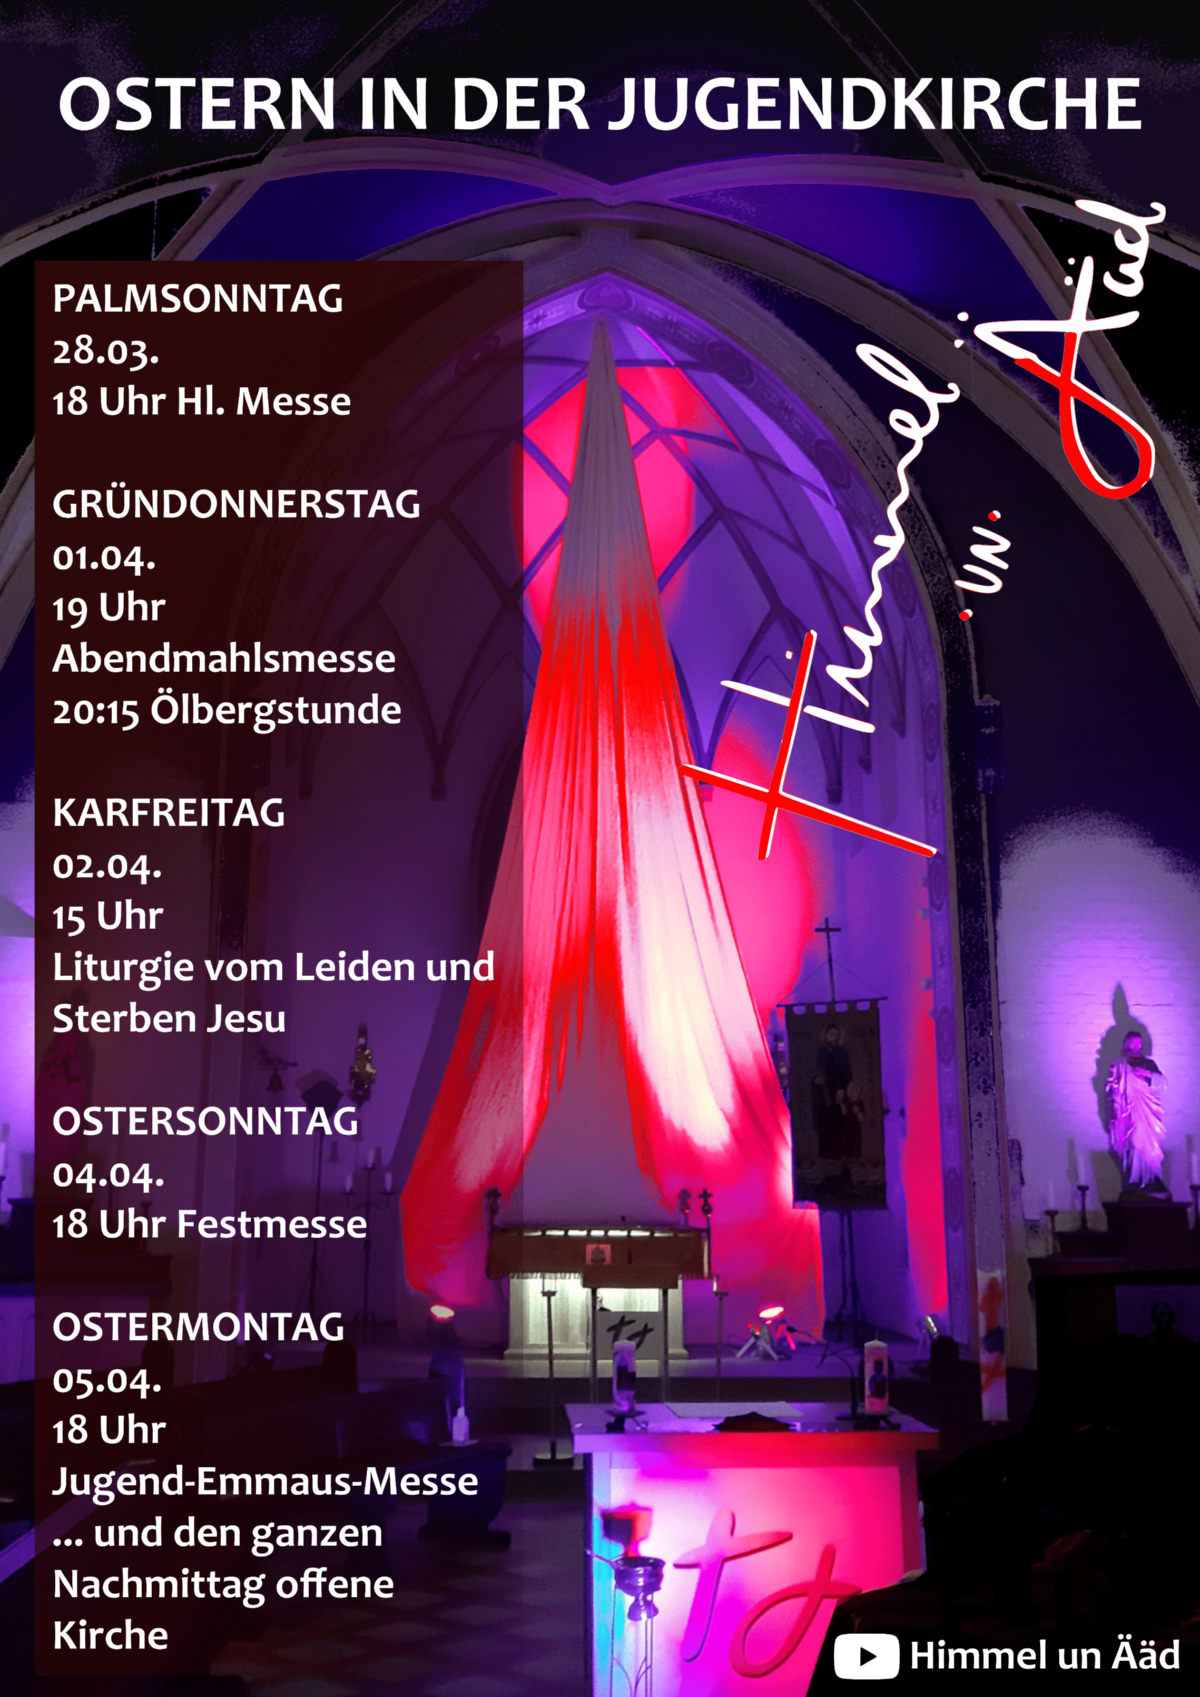 Ostern 2021 aus der Jugendkirche (c) Jugendkirche Himmel un Ääd